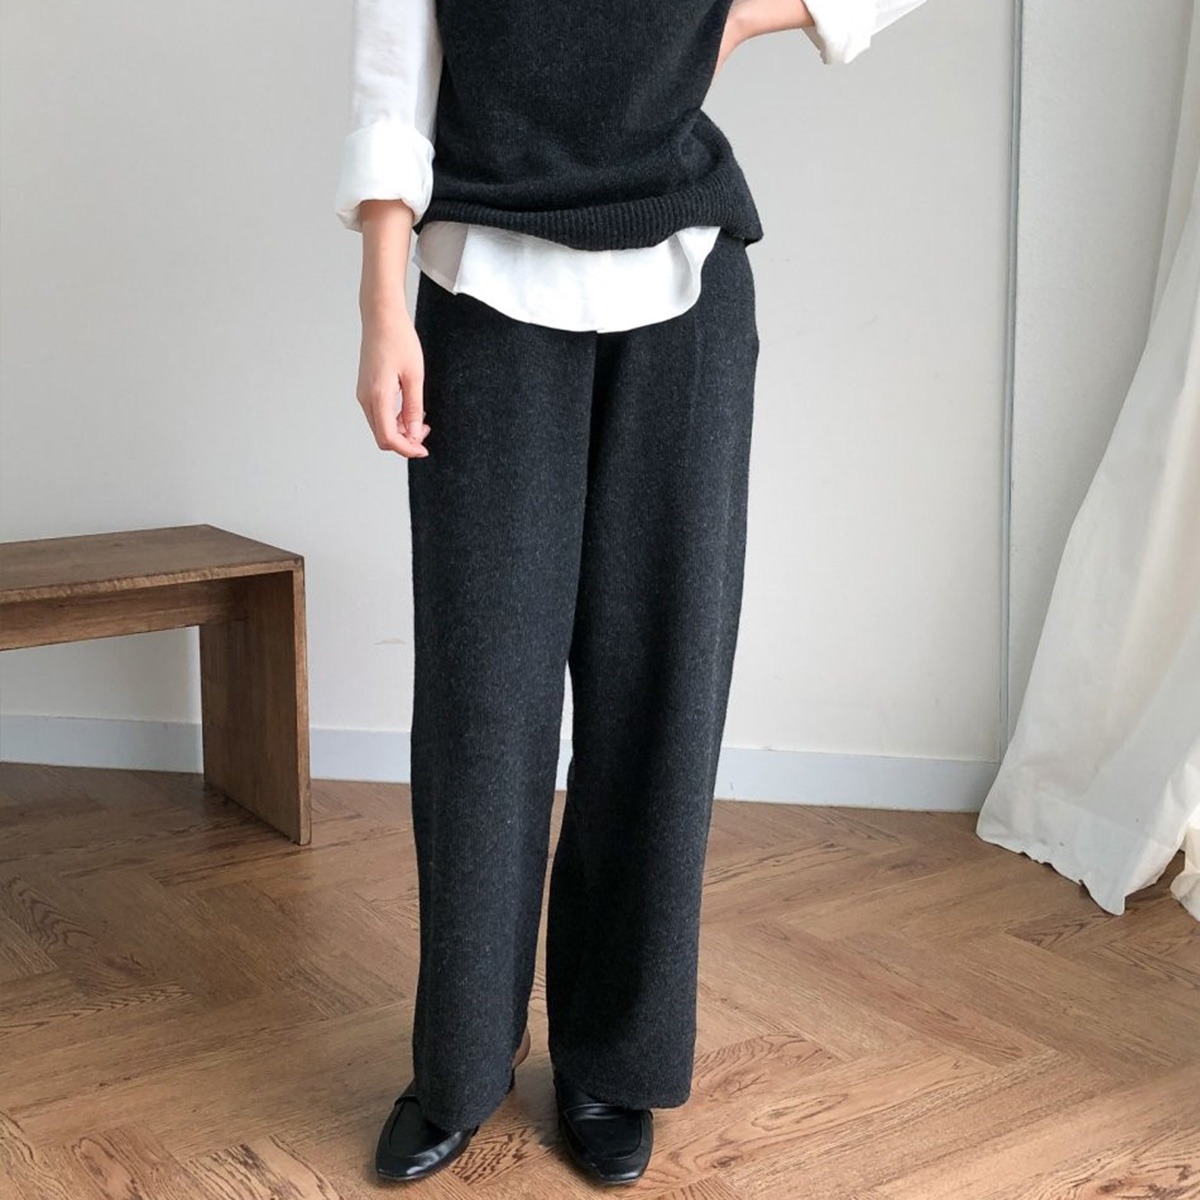 Whole garment cashmere soul knit pants (65% cashmere wool)